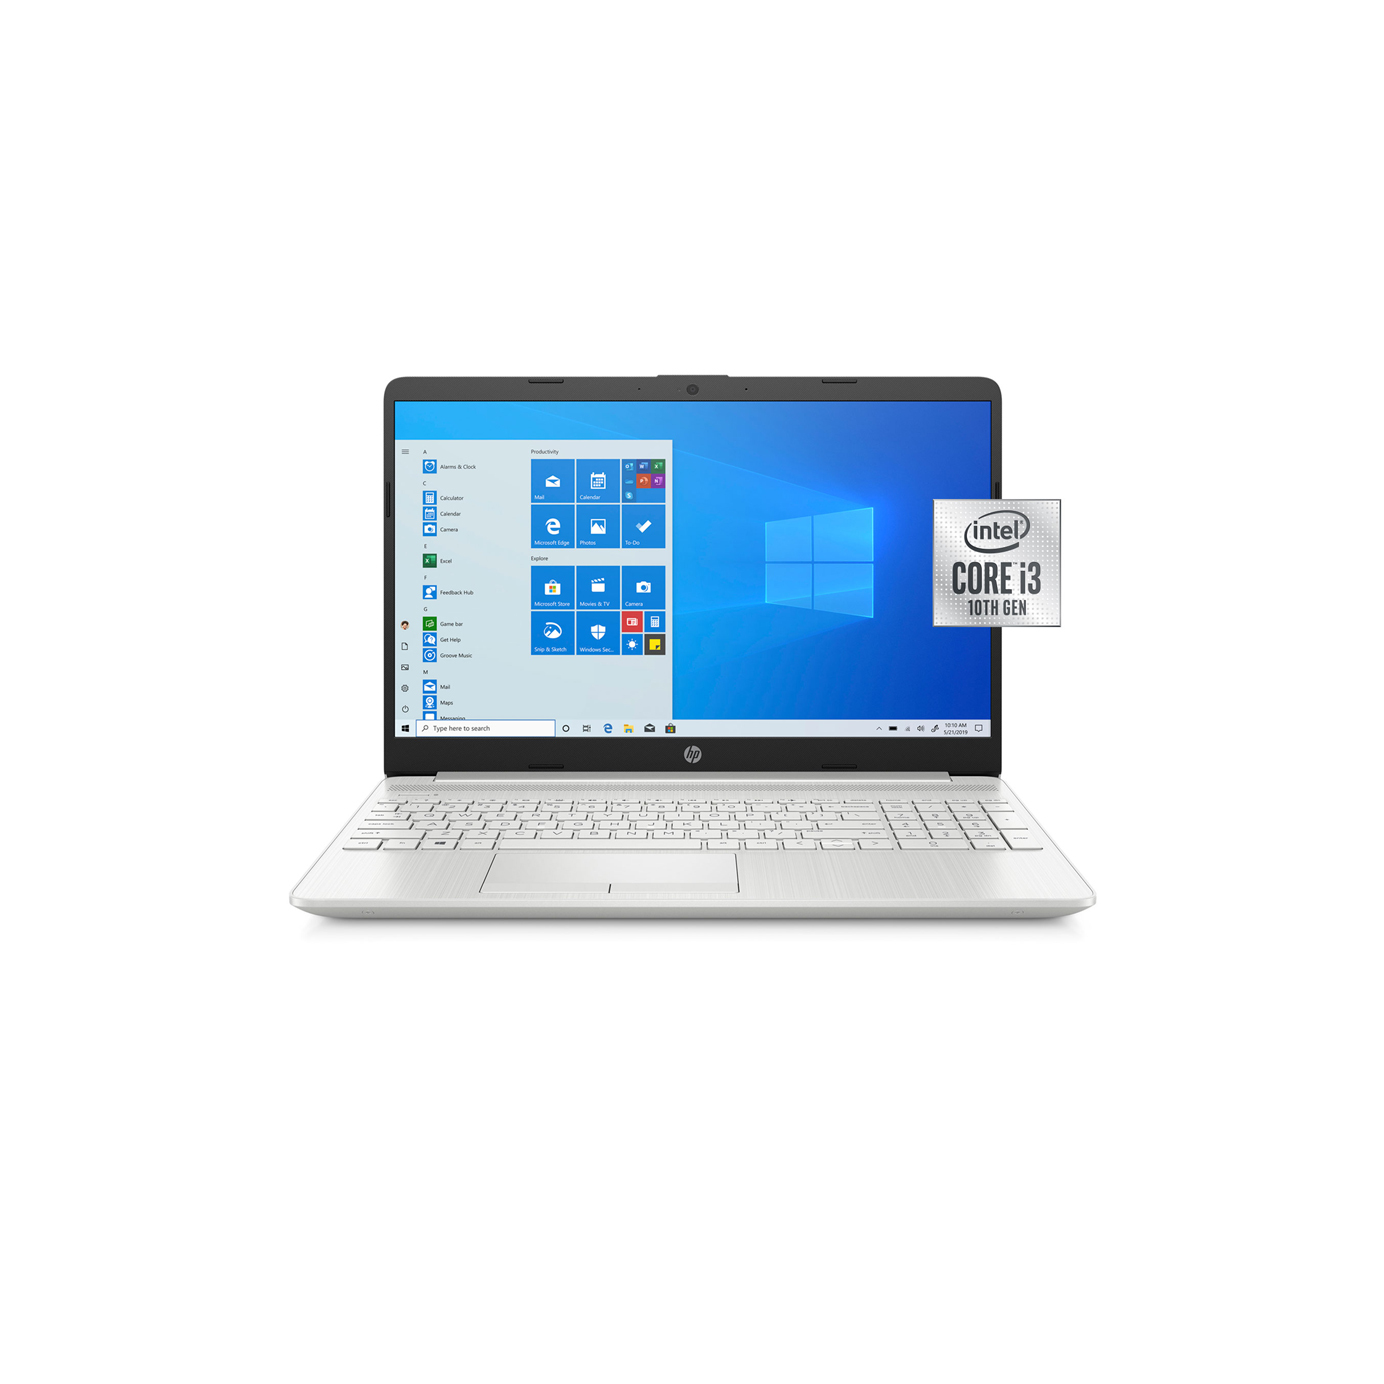 Laptop HP 15-dw1024wm - Intel core i3-10110U, 4GB RAM, SSD 128GB, Intel UHD Graphics, 15.6 inch